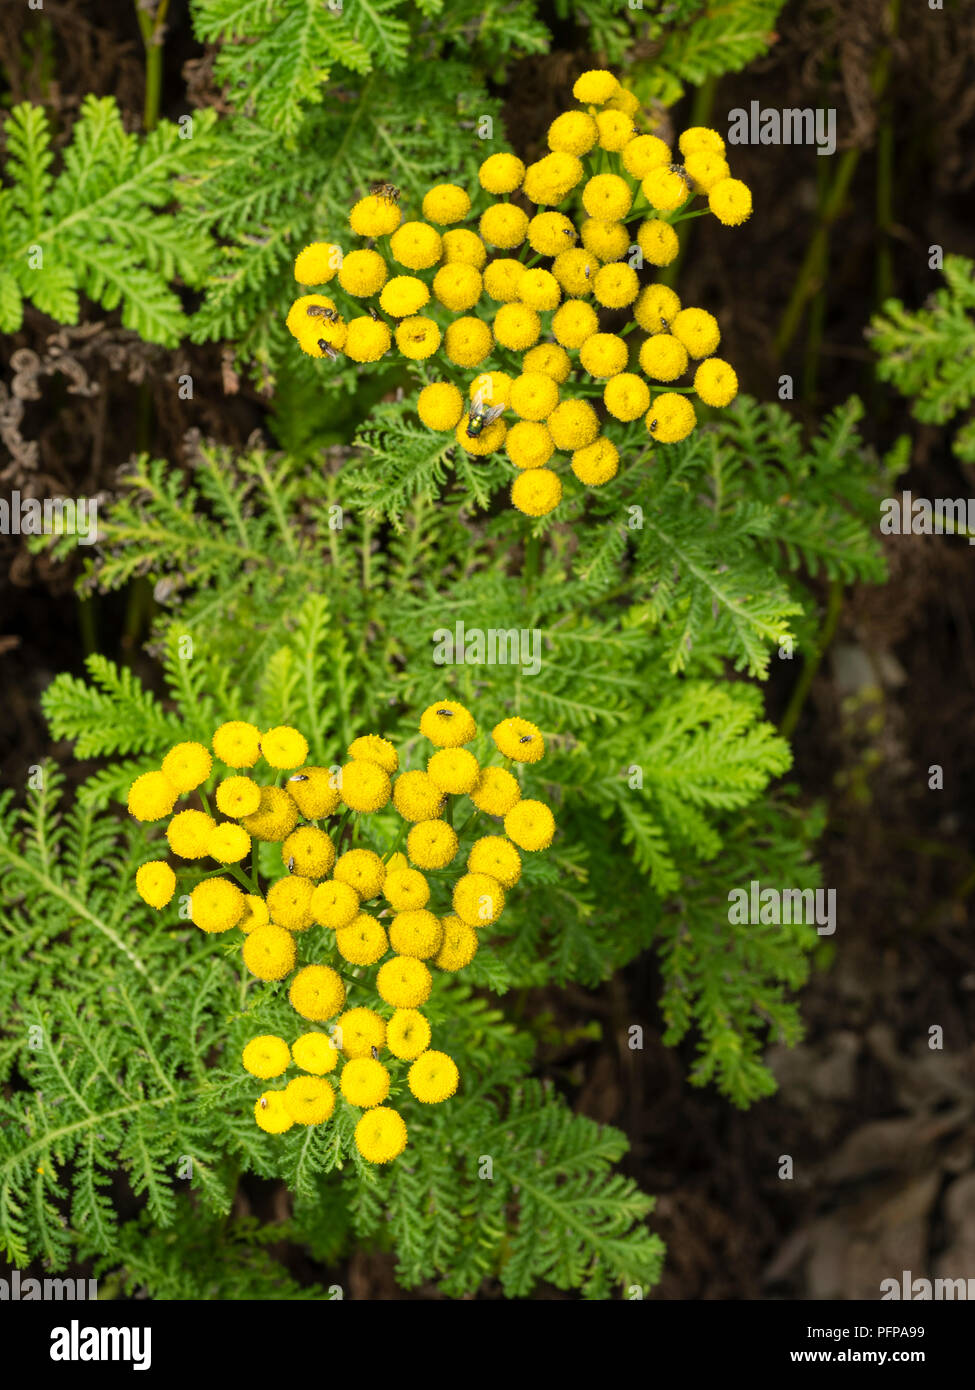 Gelbe Taste Blumen und ferny Laub von Rainfarn, Tanacetum vulgare, eine Heilpflanze, die in grösseren Mengen giftig ist Stockfoto